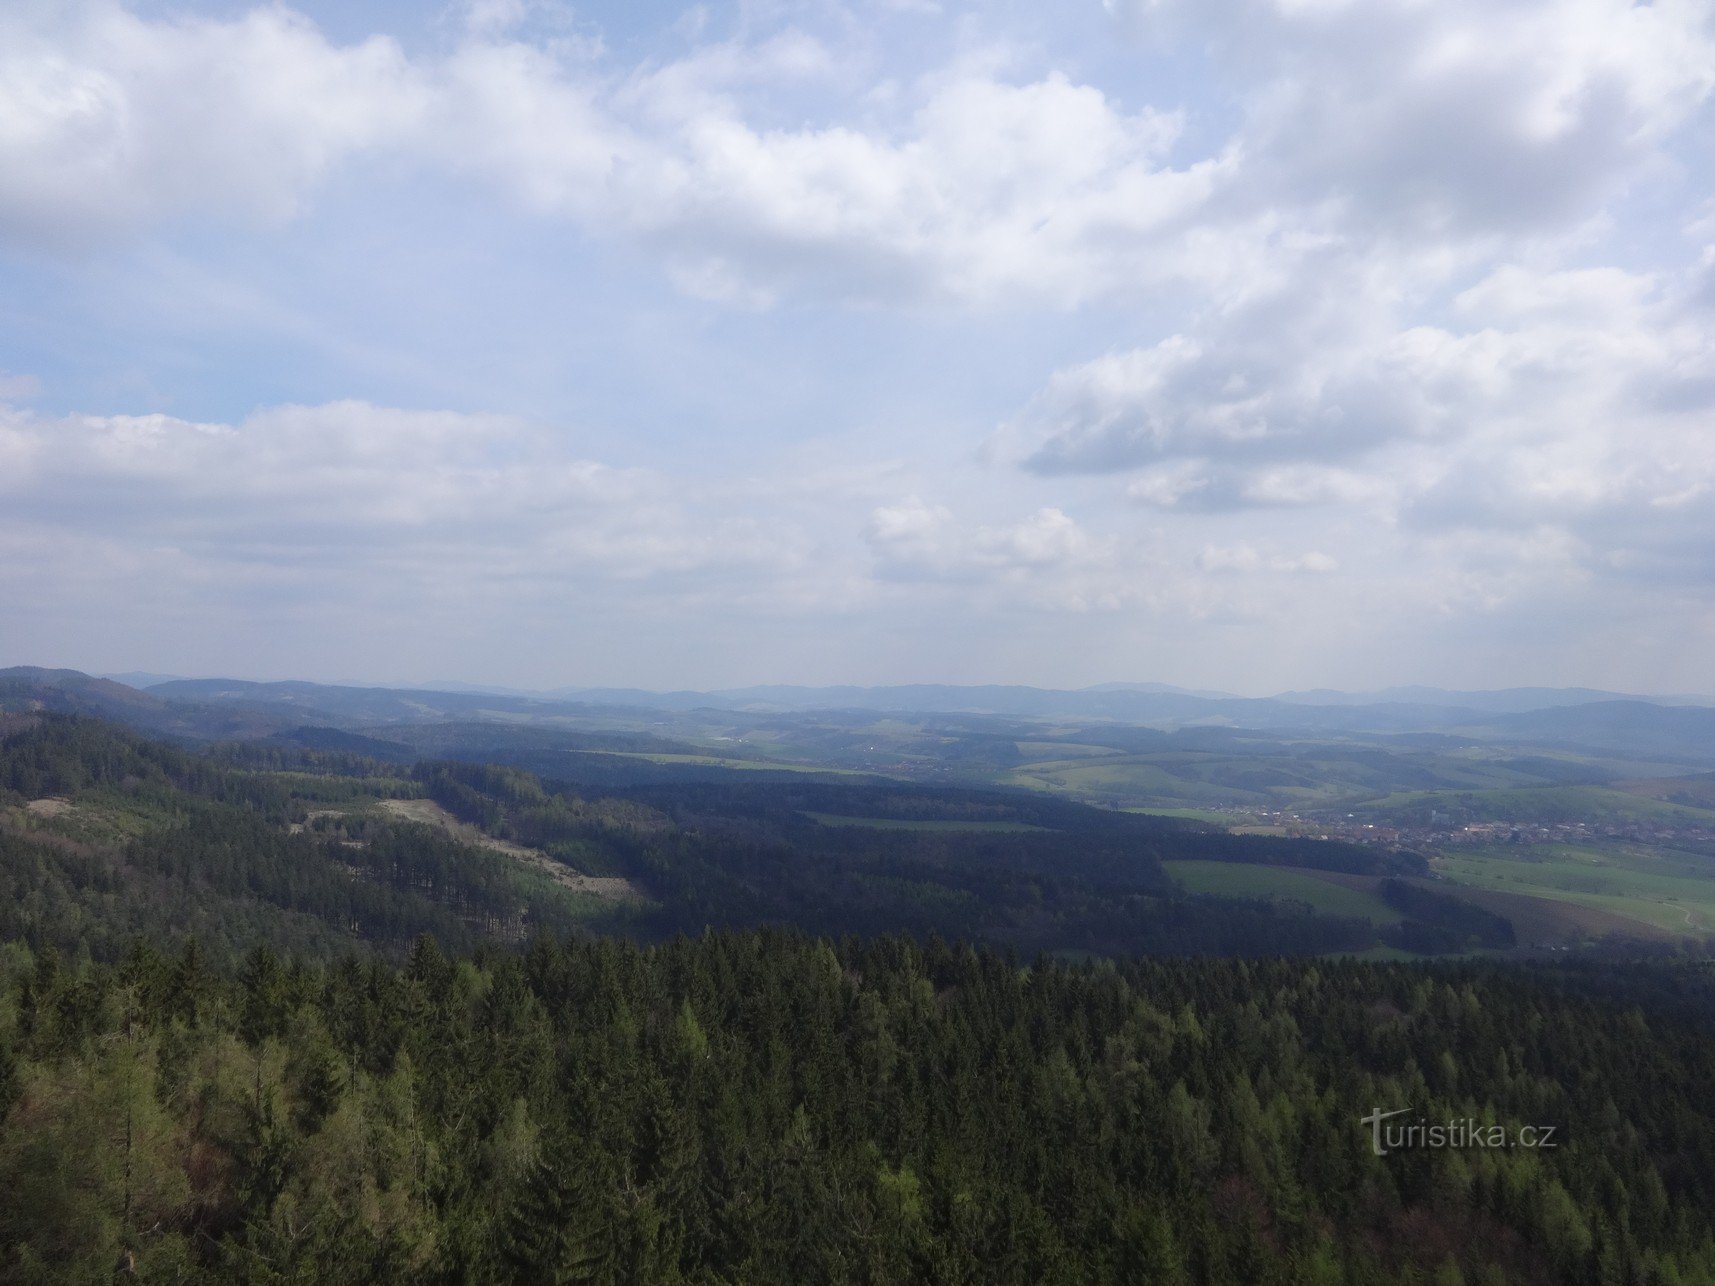 Aussichtsturm Doubrava - ein zugänglicher Sender in der Nähe von Vizovice